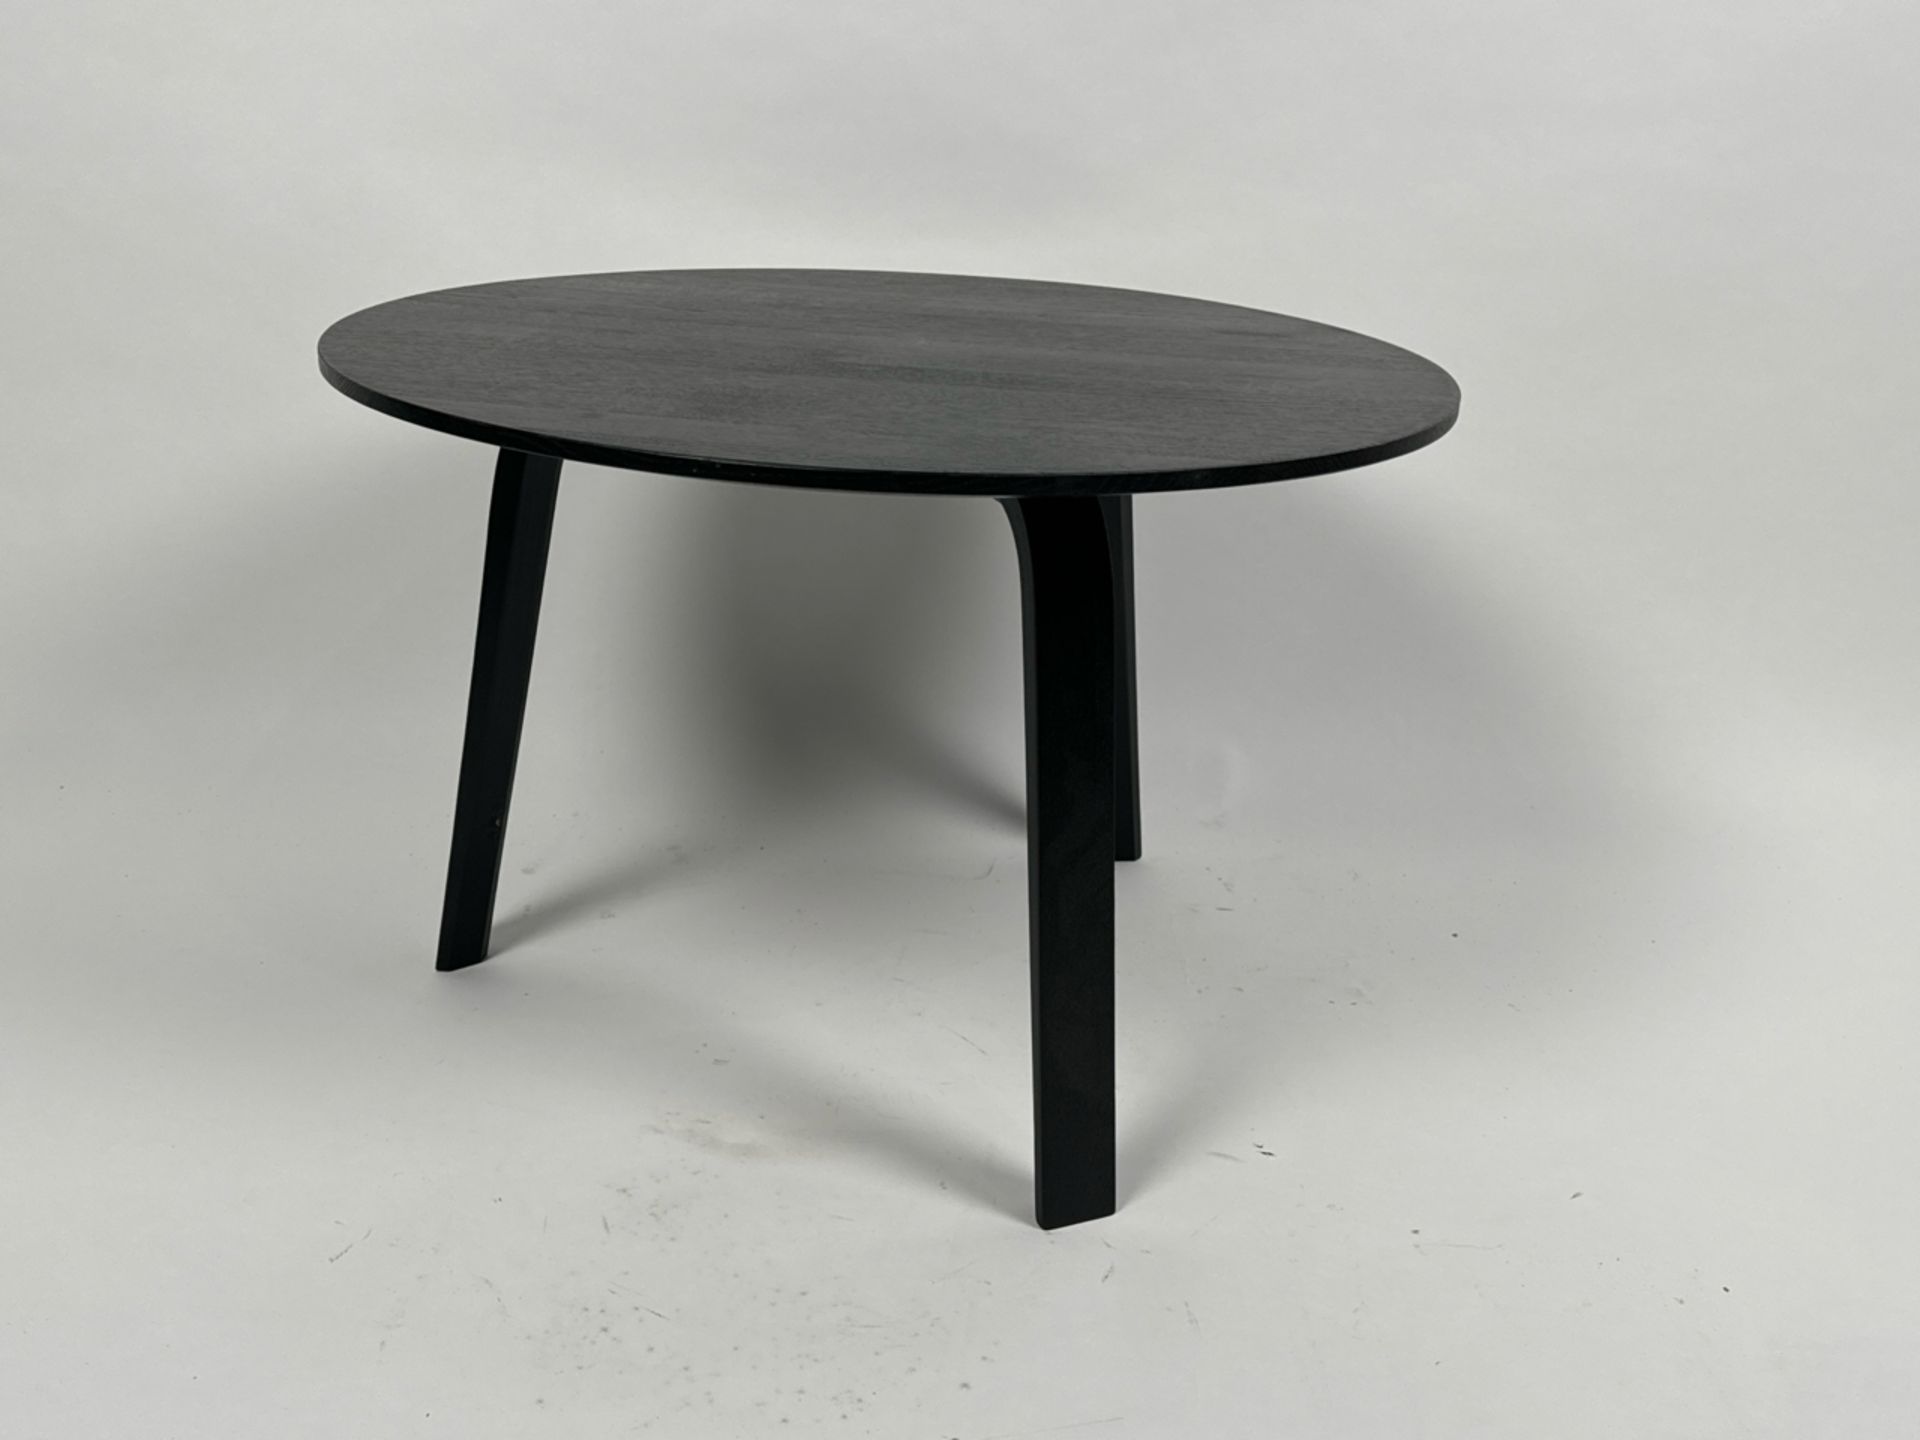 Amara Black Wood Coffee Table - Image 2 of 3